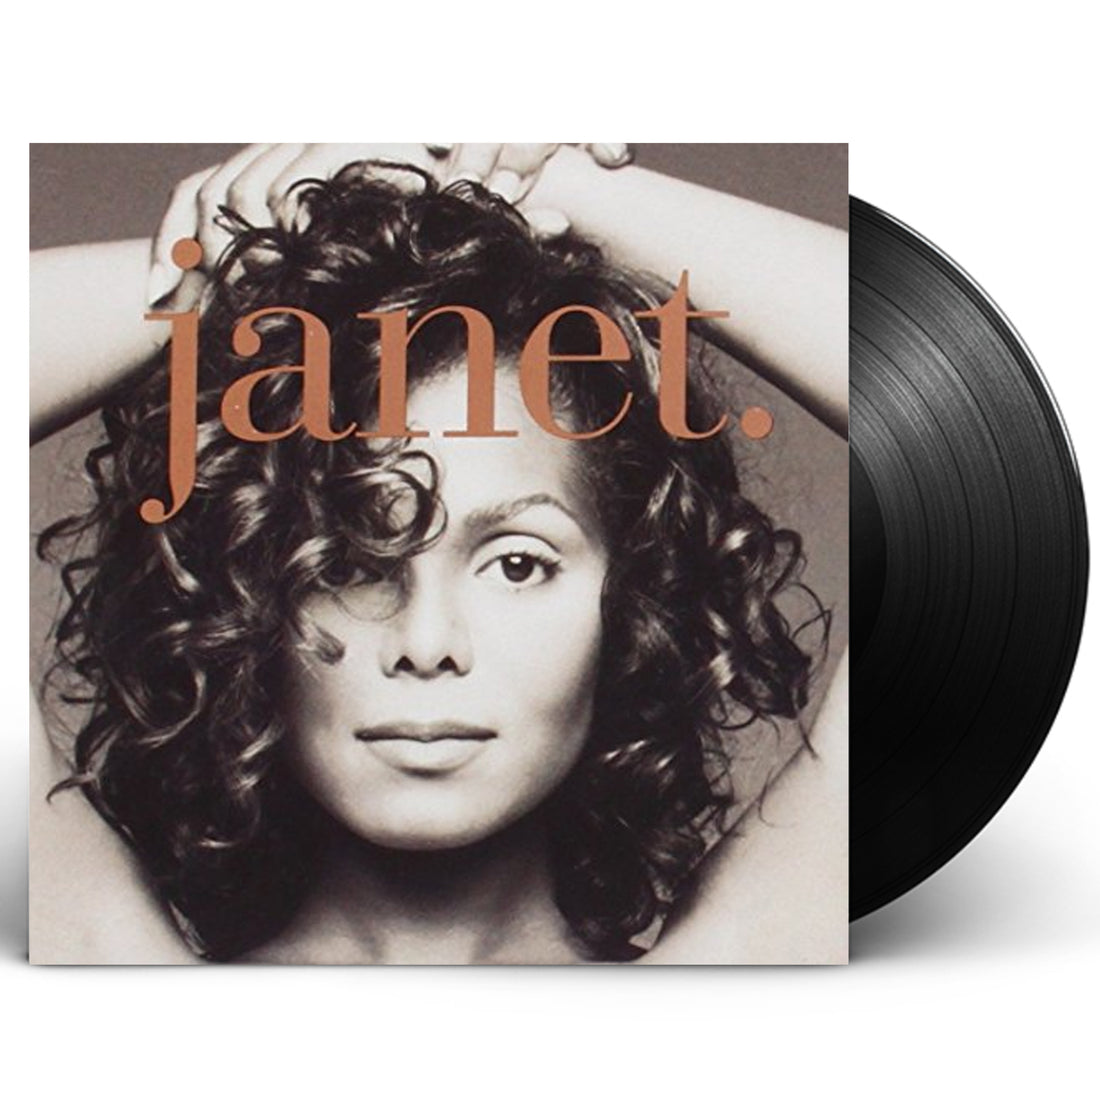 Janet Jackson "janet." 2xLP Vinyl